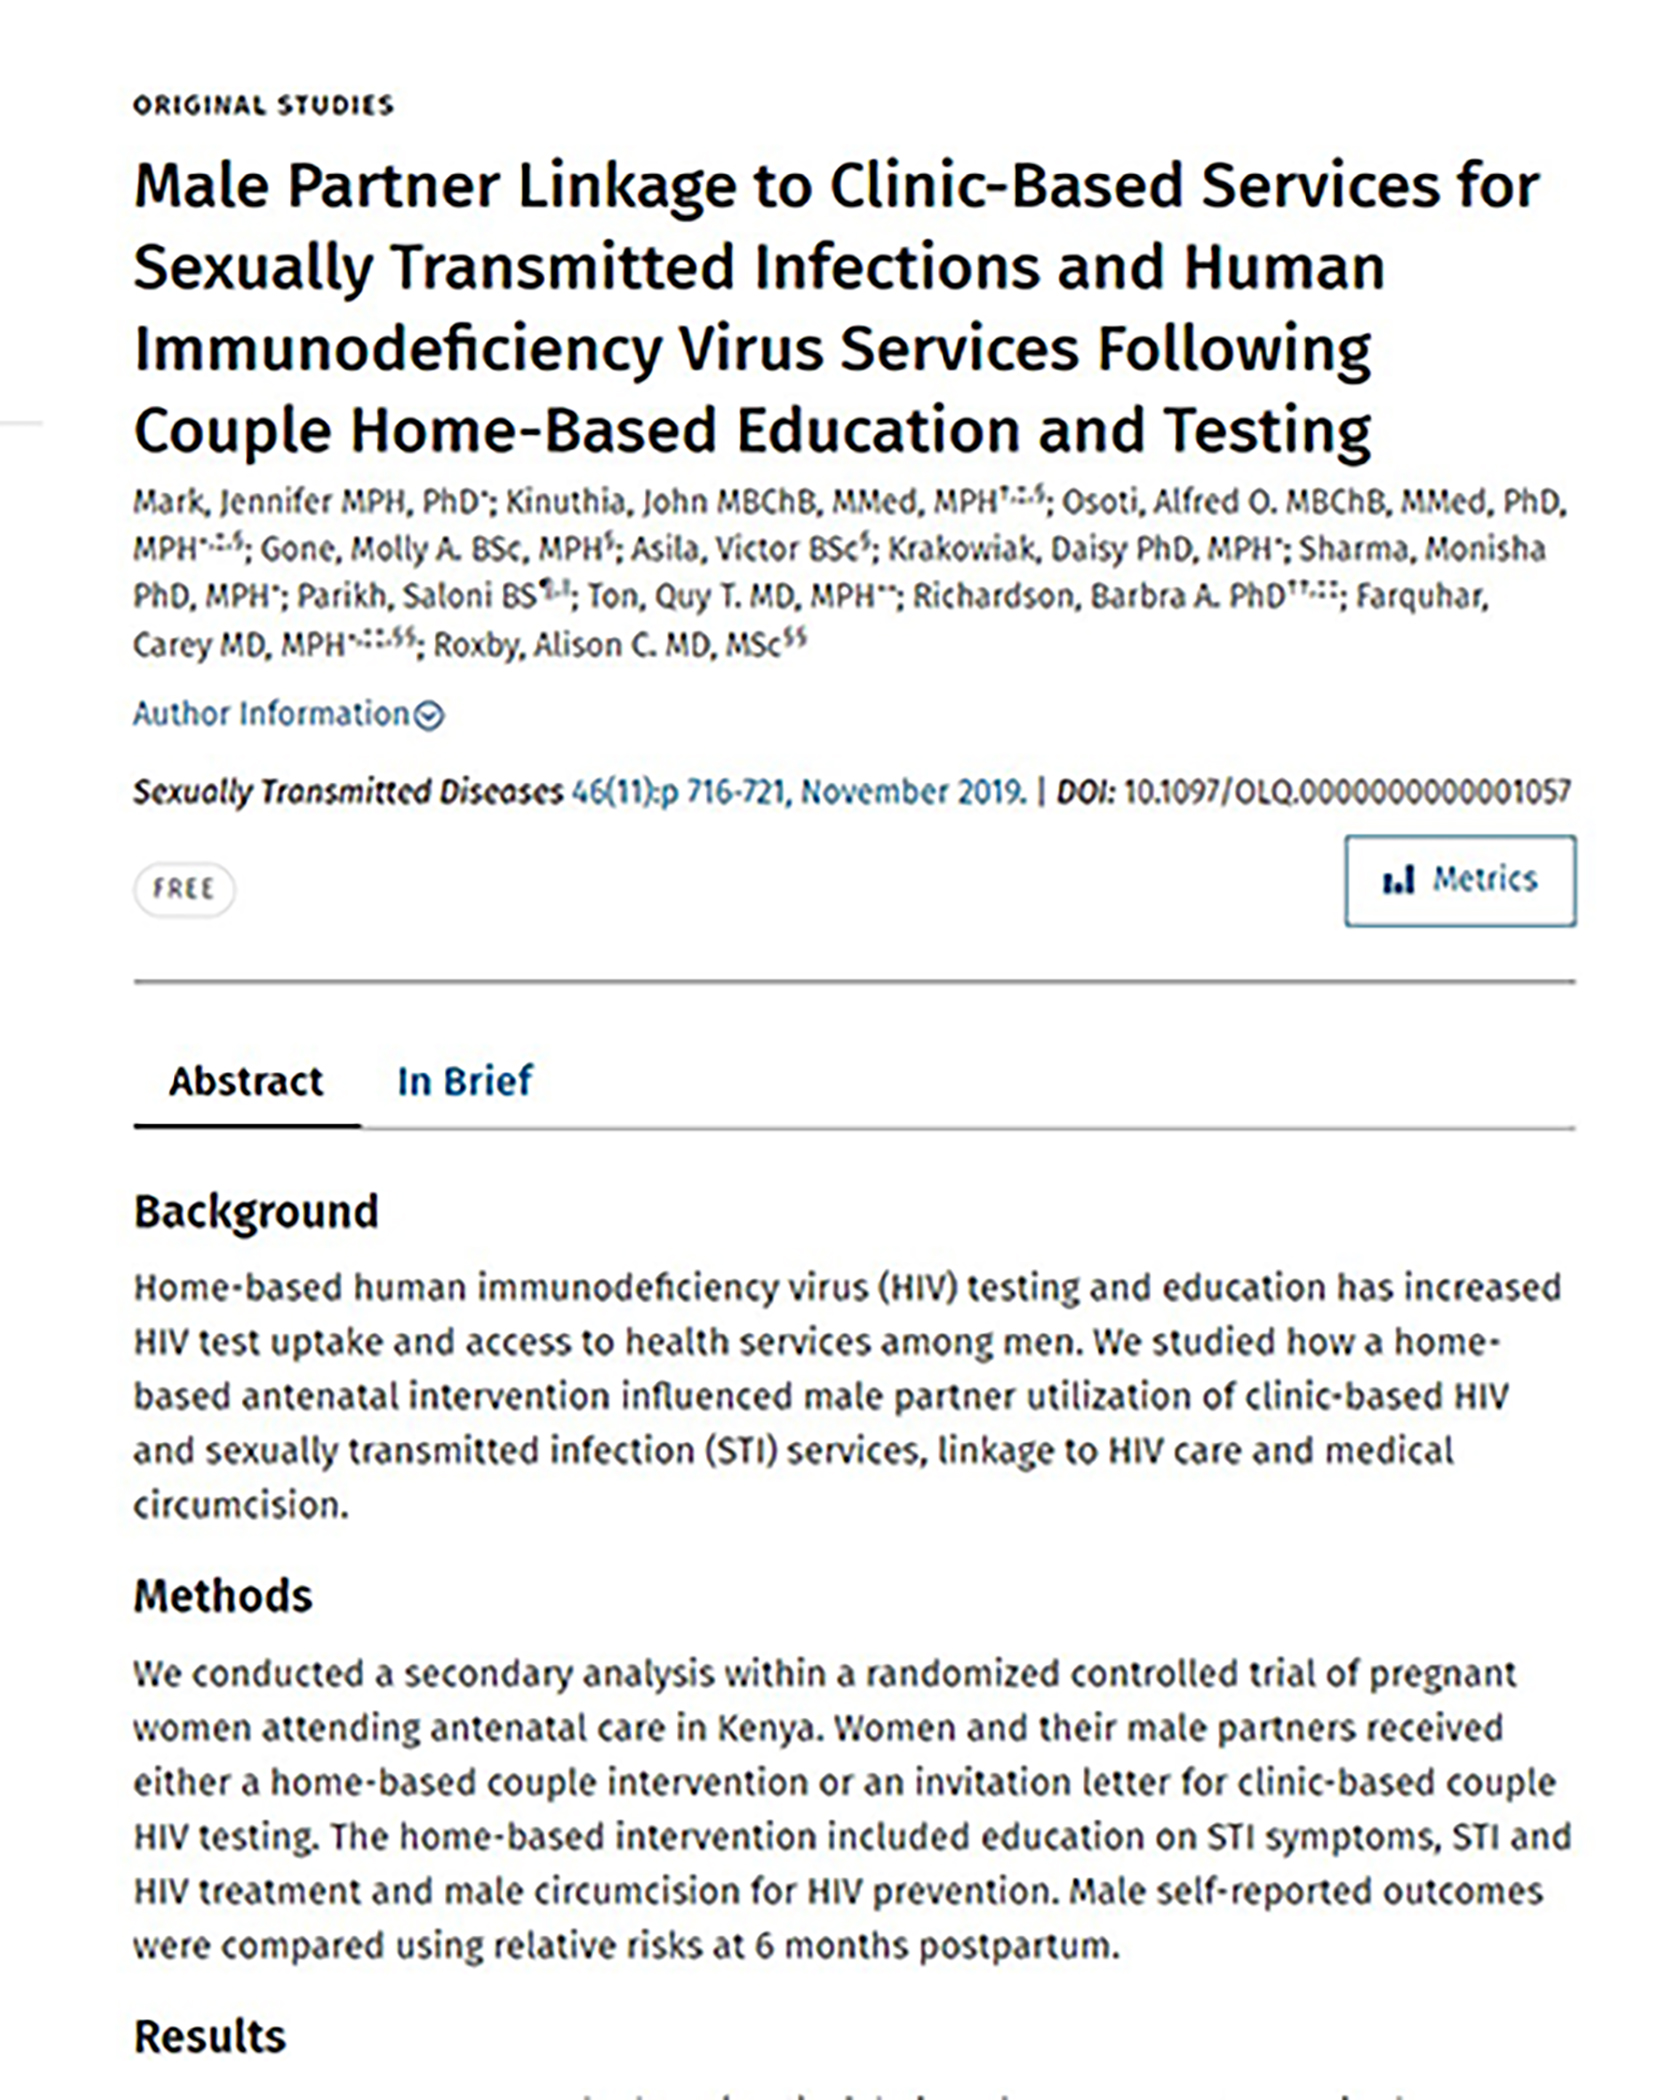 Lien entre le partenaire masculin et les services cliniques pour les infections sexuellement transmissibles et le VIH - couverture